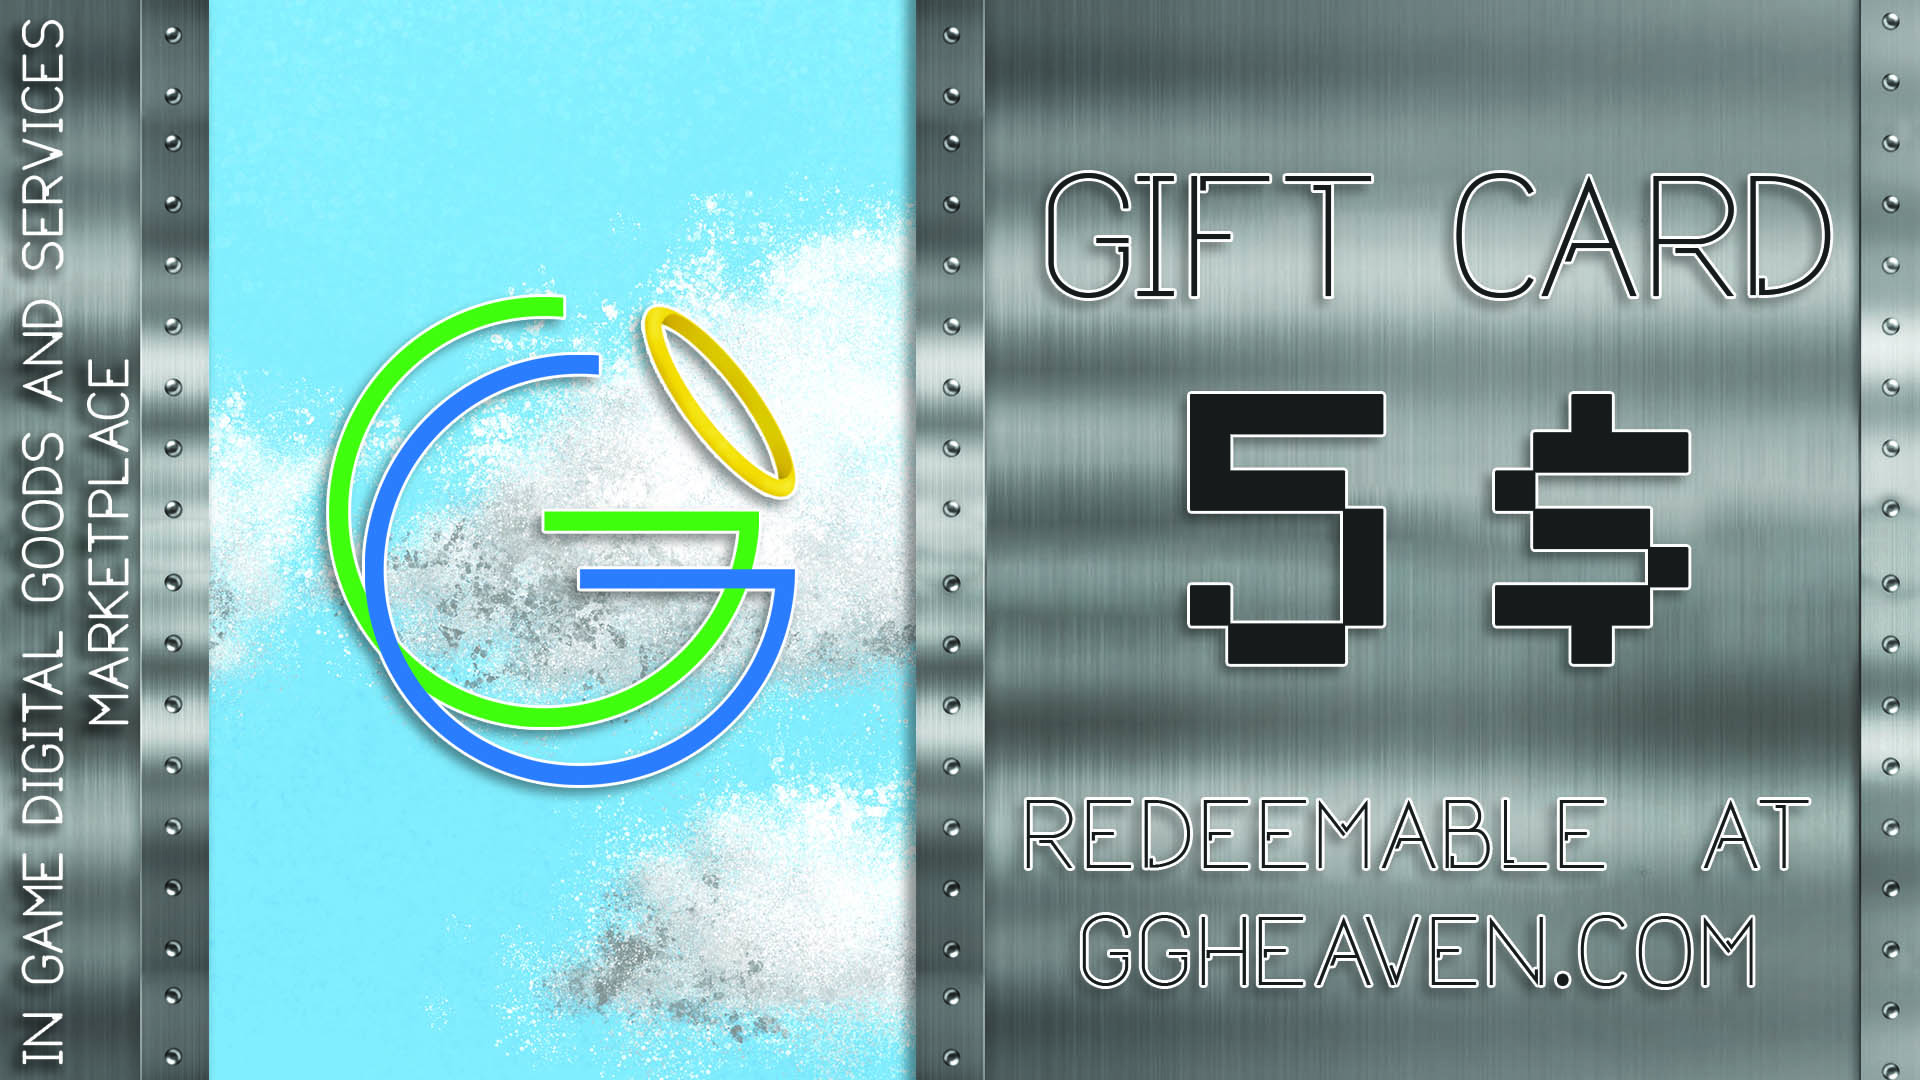 GGHeaven.com 5$ Gift Card [$ 6.27]